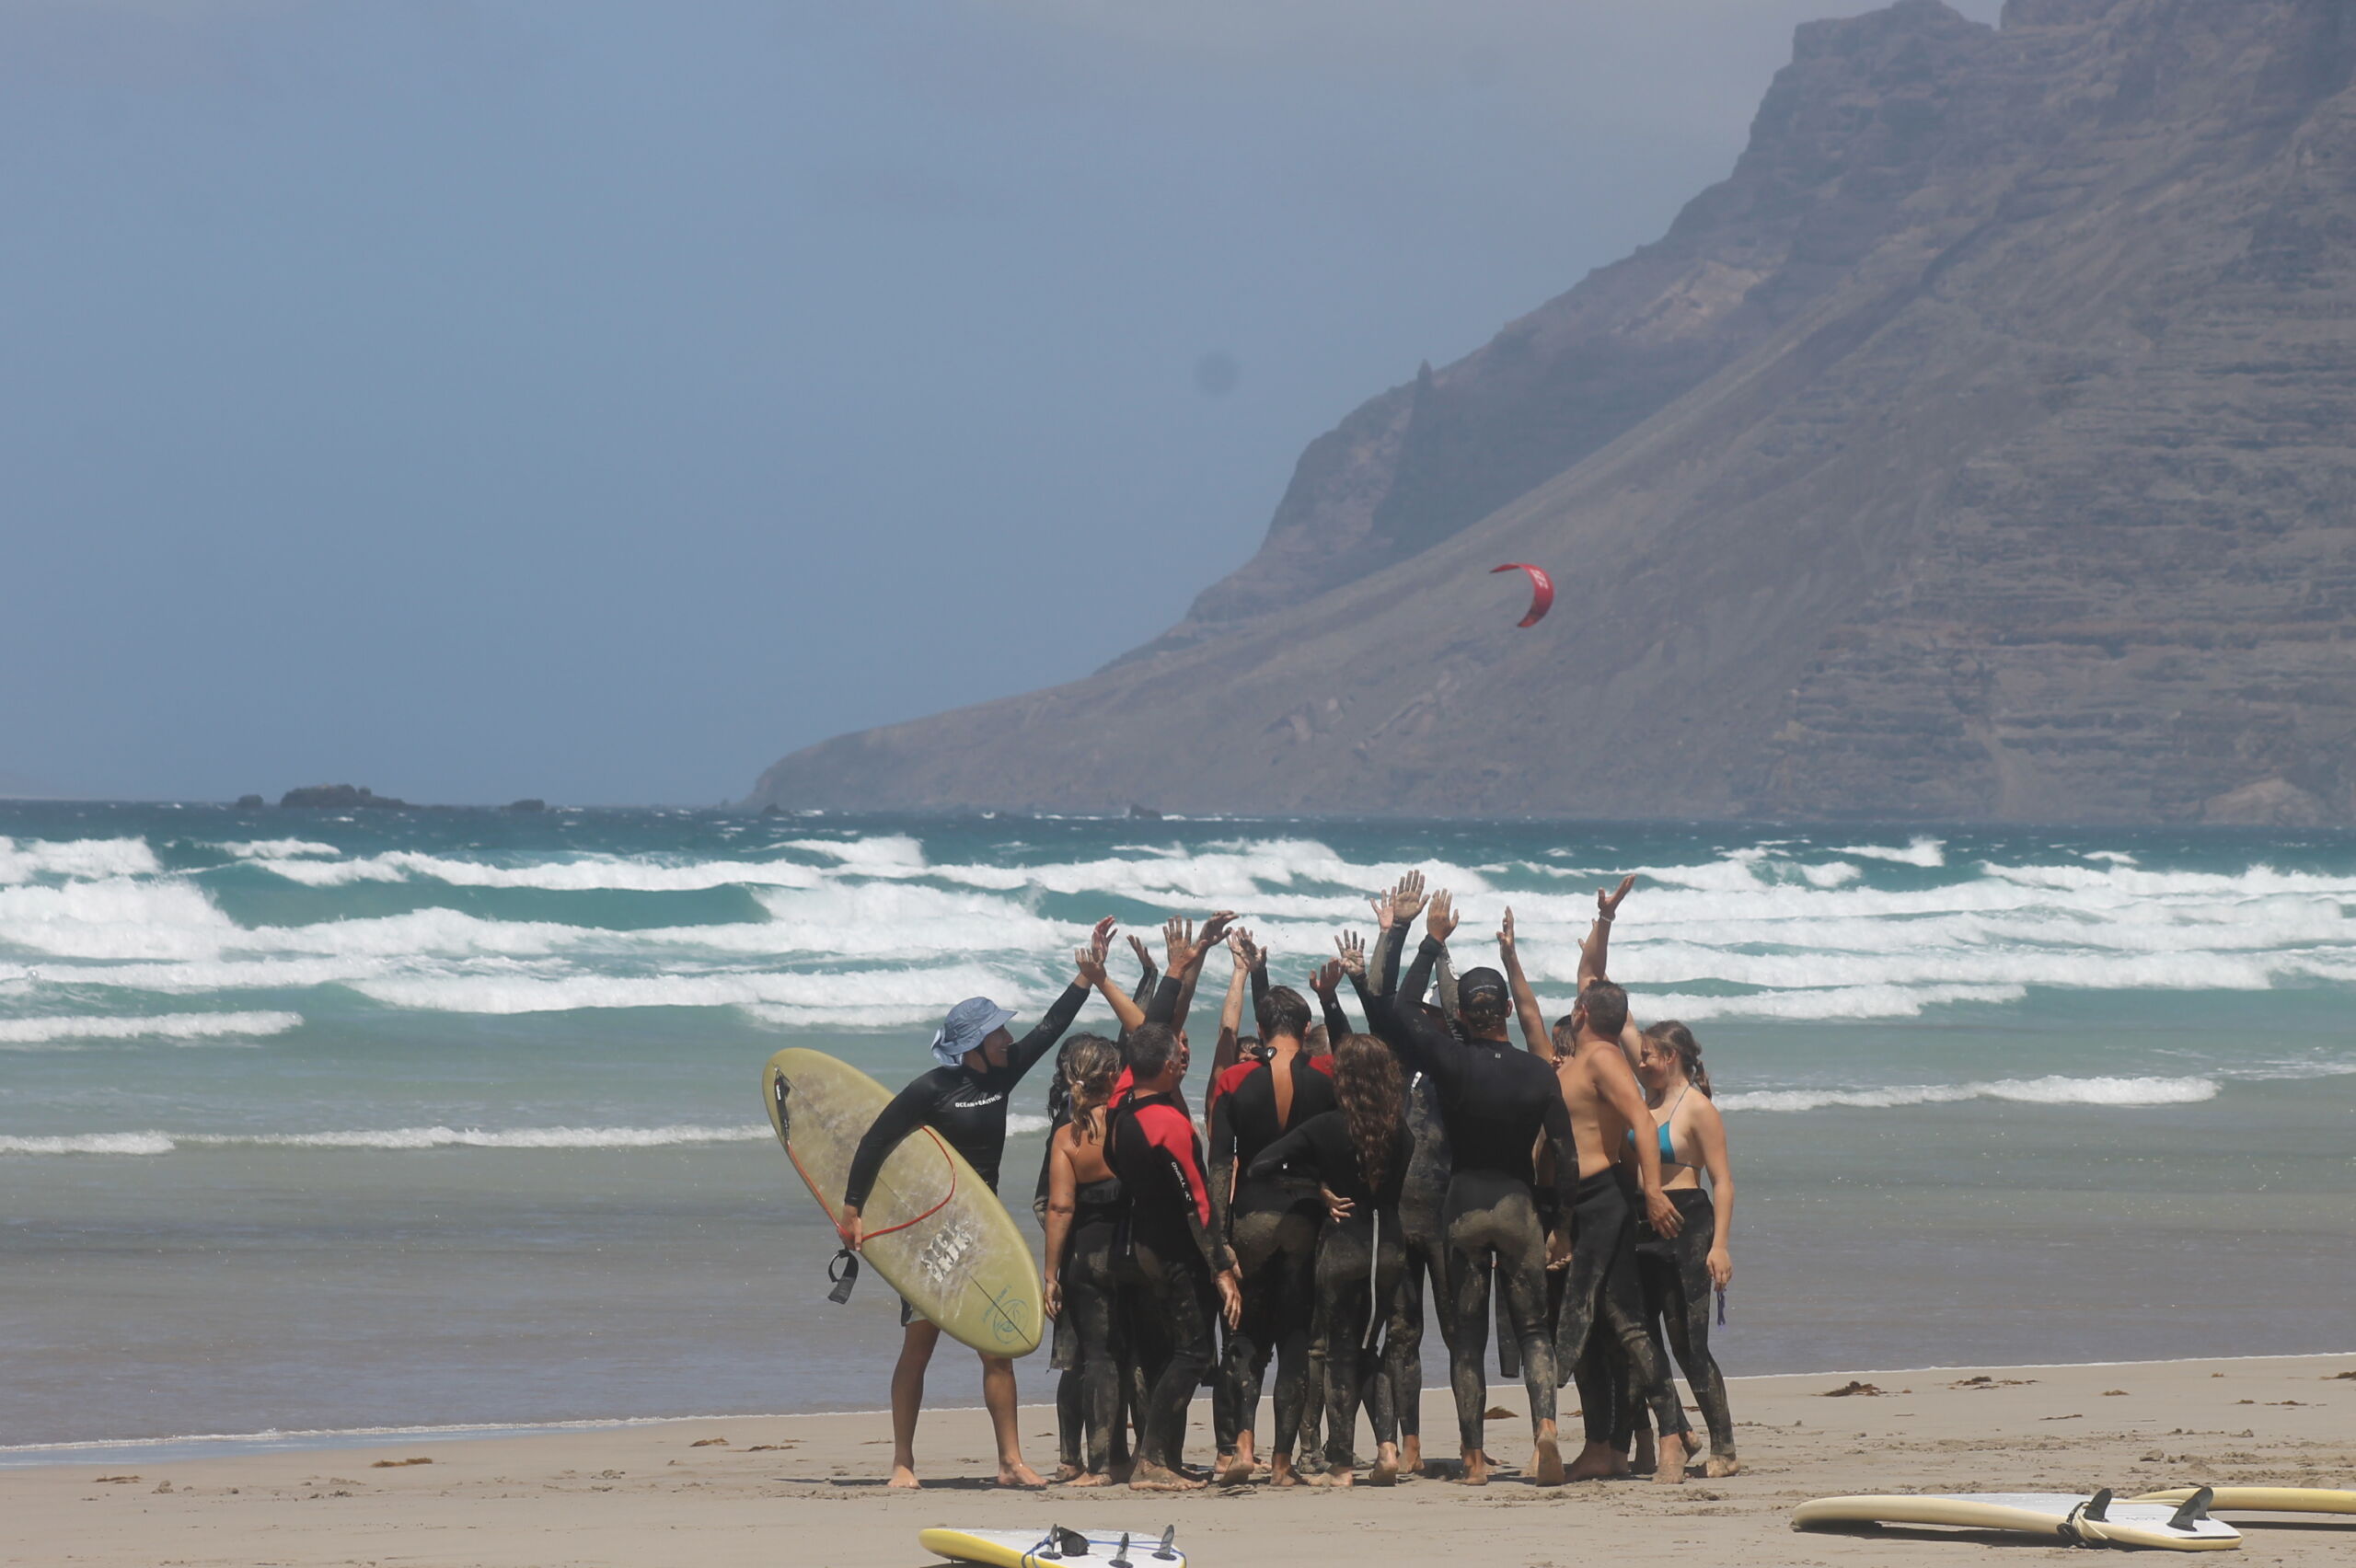 Lanzasurf École de Surf & Camps de Yoga - Meilleure École de Surf